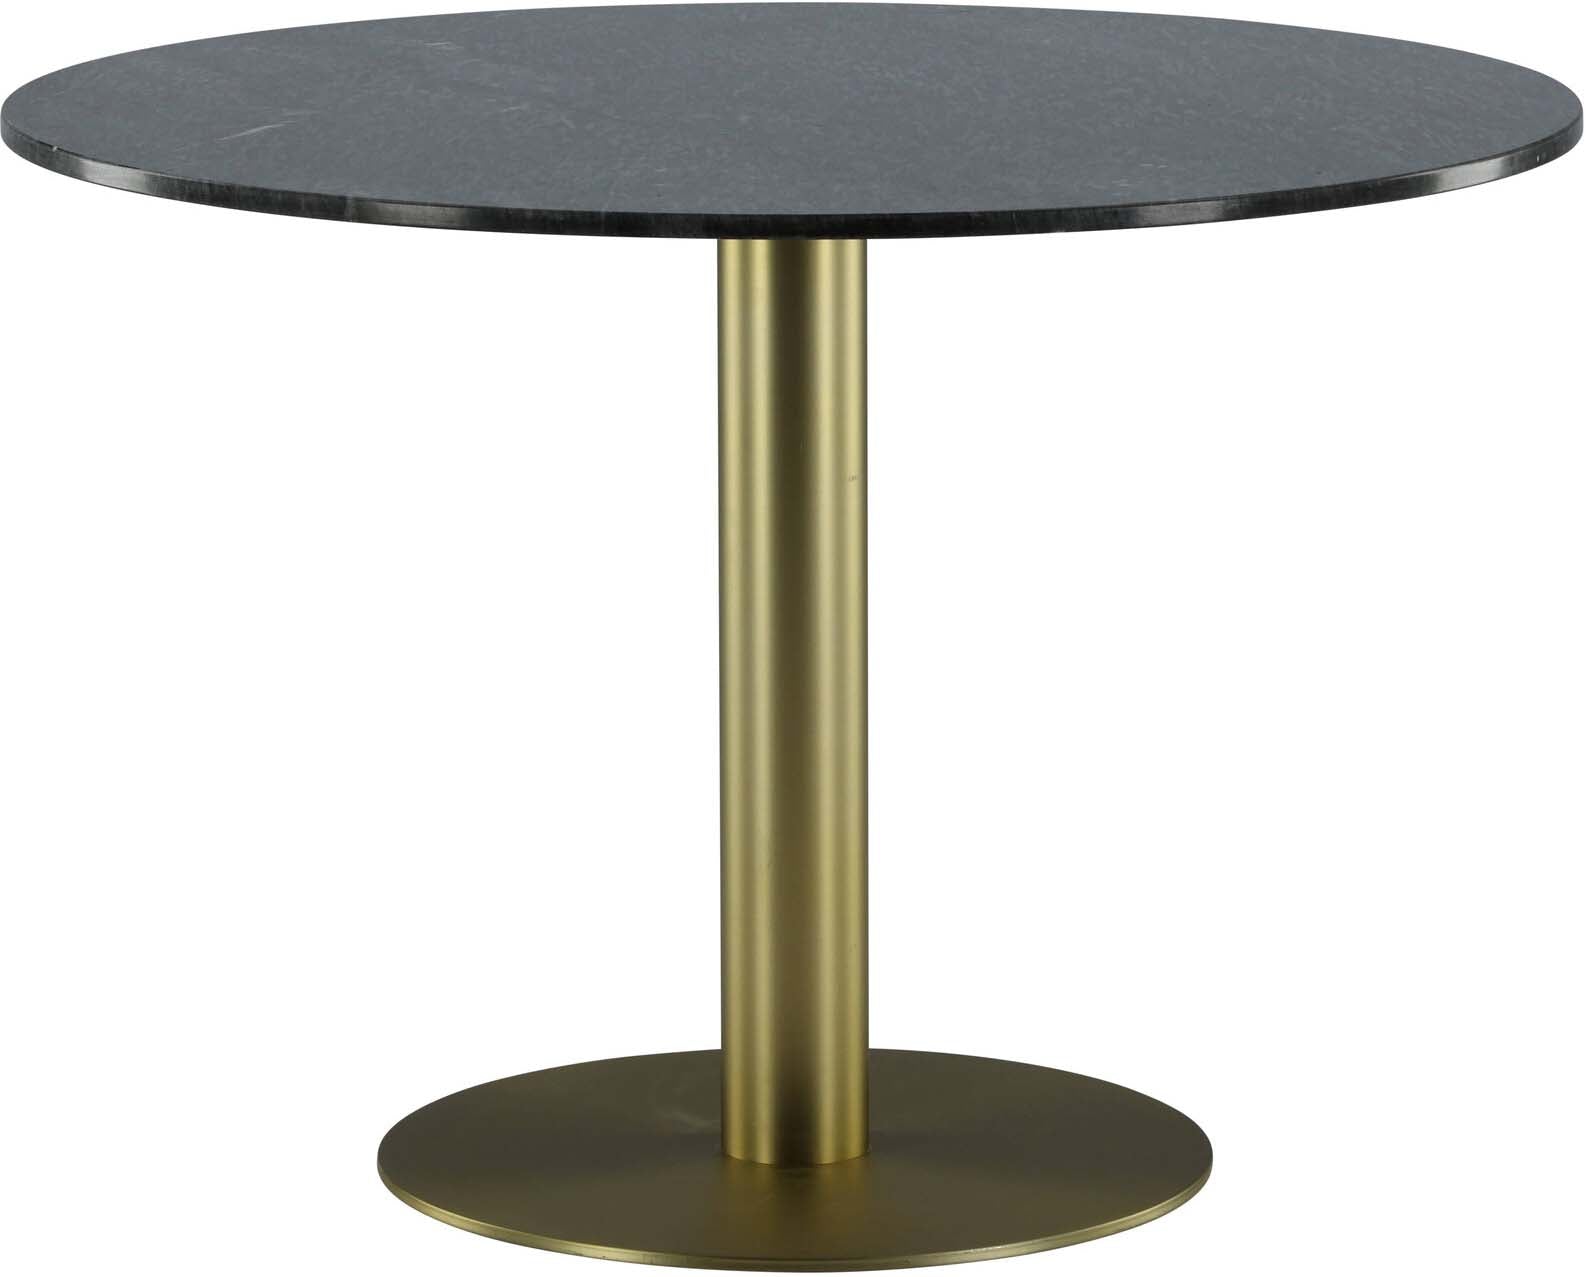 Estelle Tisch in Grau / Schwarz / Gold präsentiert im Onlineshop von KAQTU Design AG. Esstisch ist von Venture Home